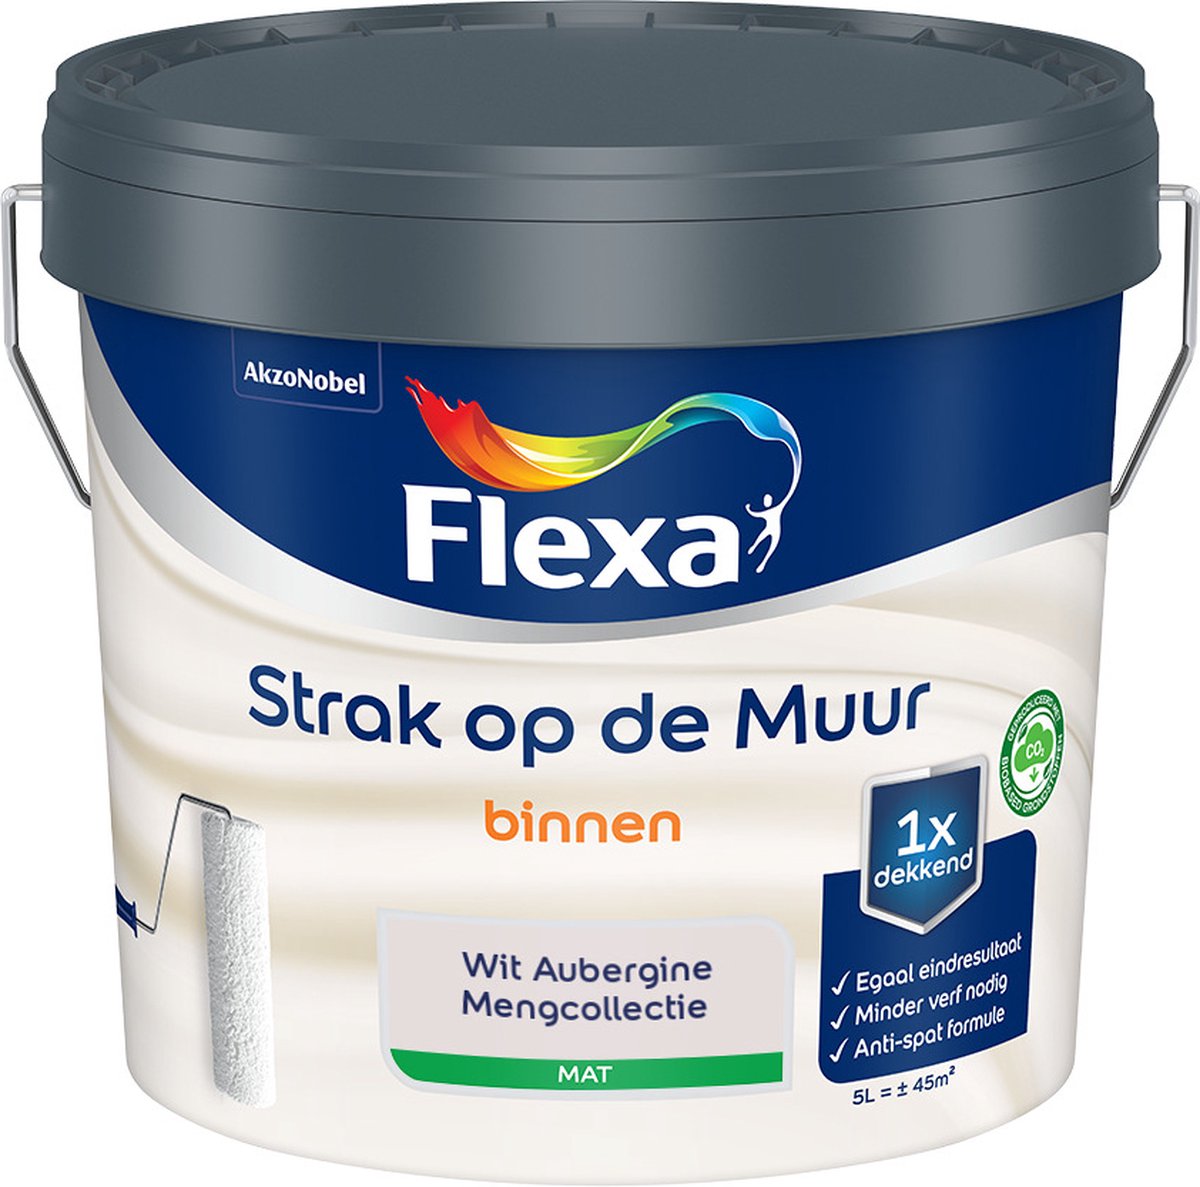 Flexa - Strak op de muur - Muurverf - Mengcollectie - Wit Aubergine - 5 Liter